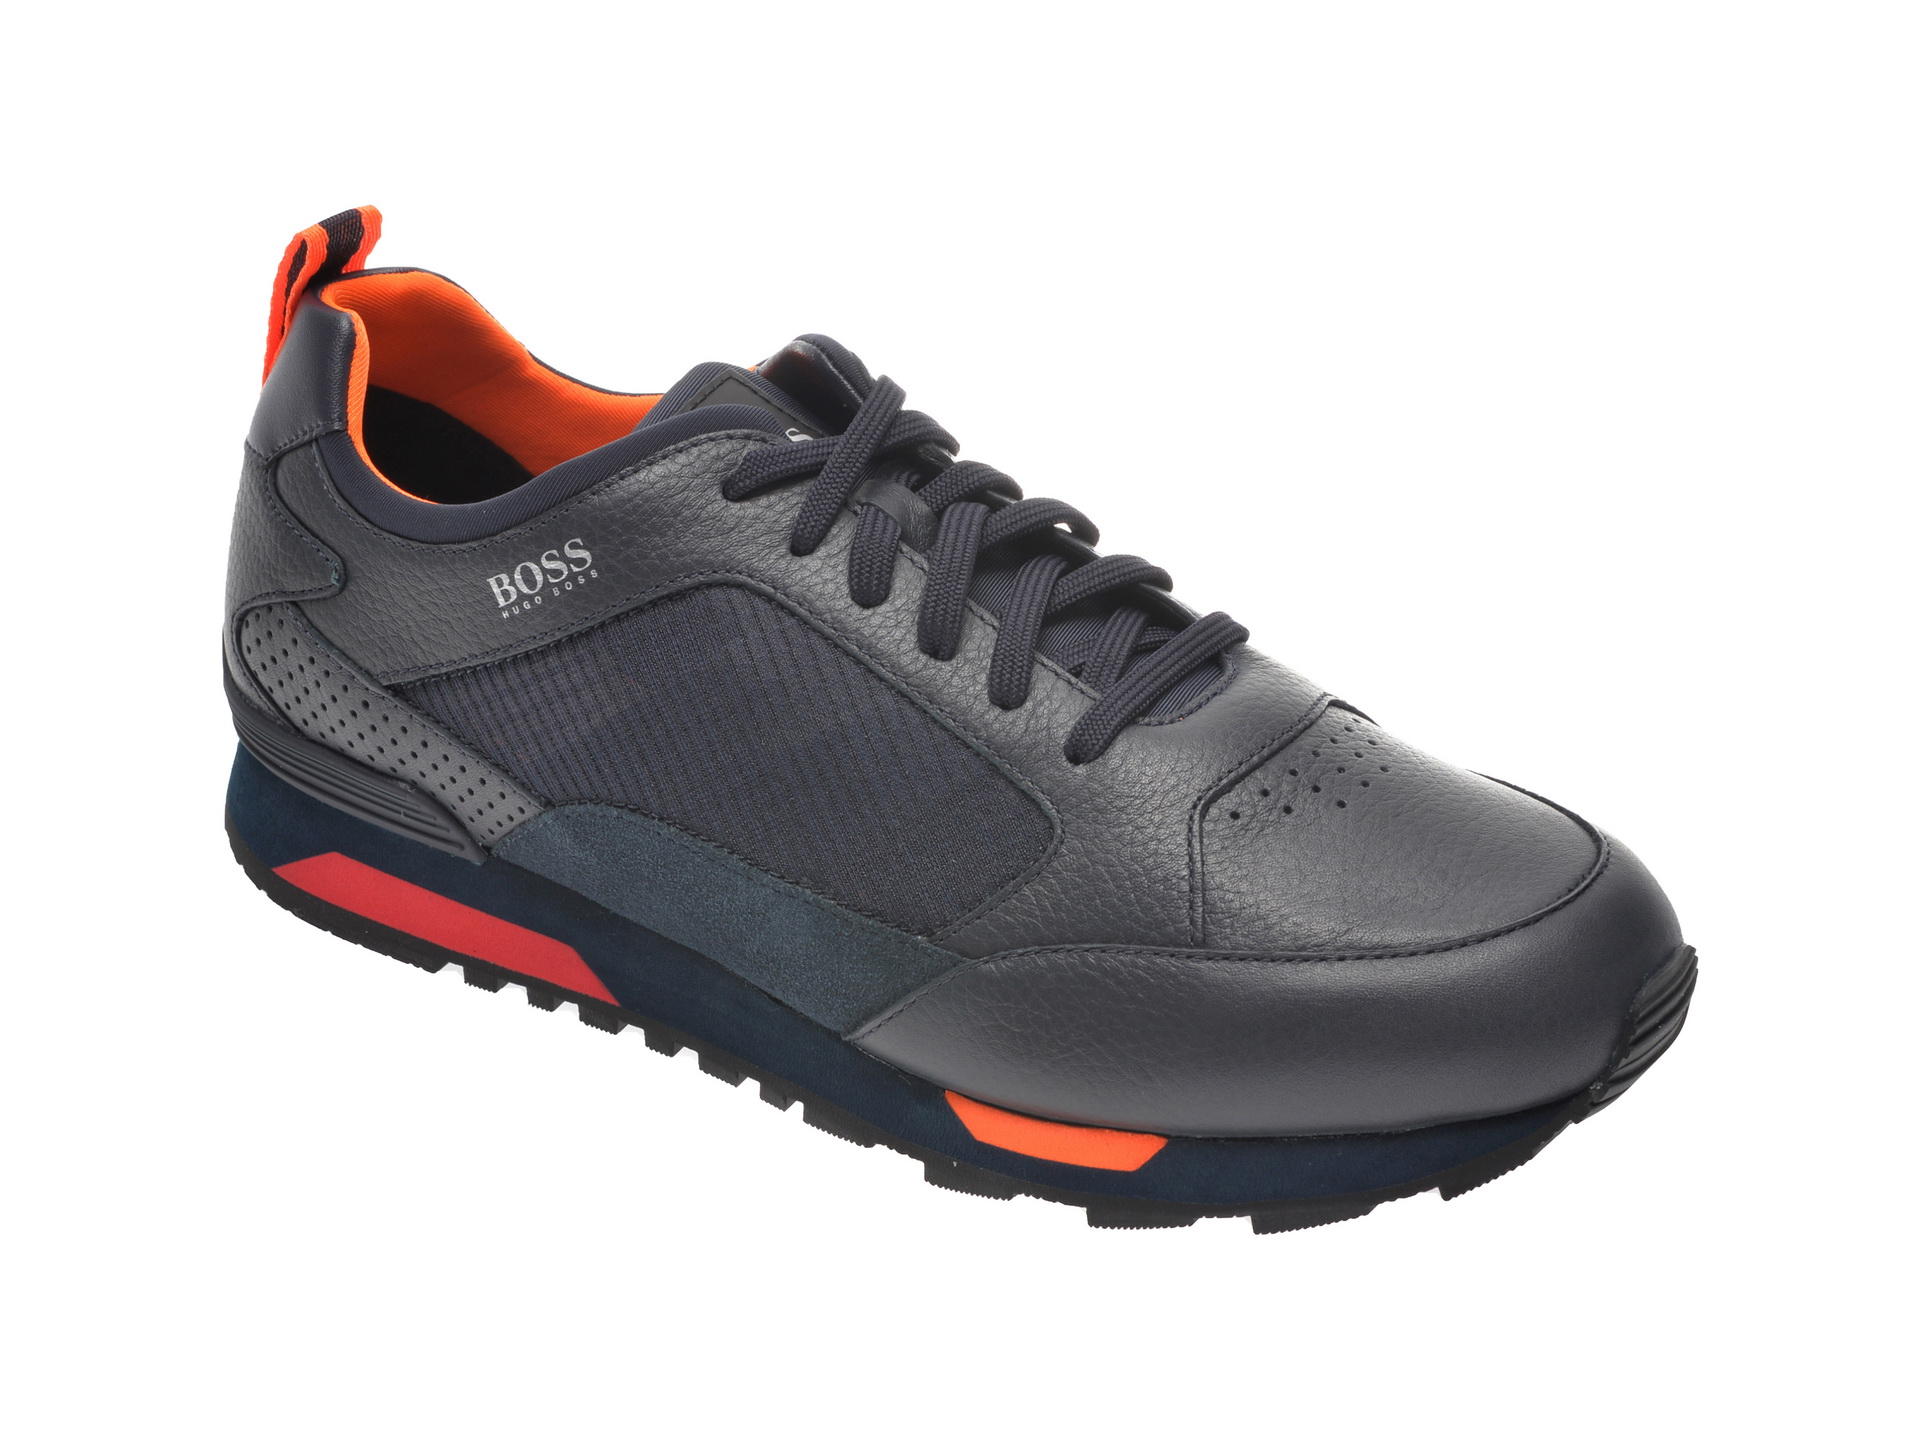 Pantofi sport HUGO BOSS bleumarin, 8483, din material textil si piele naturala